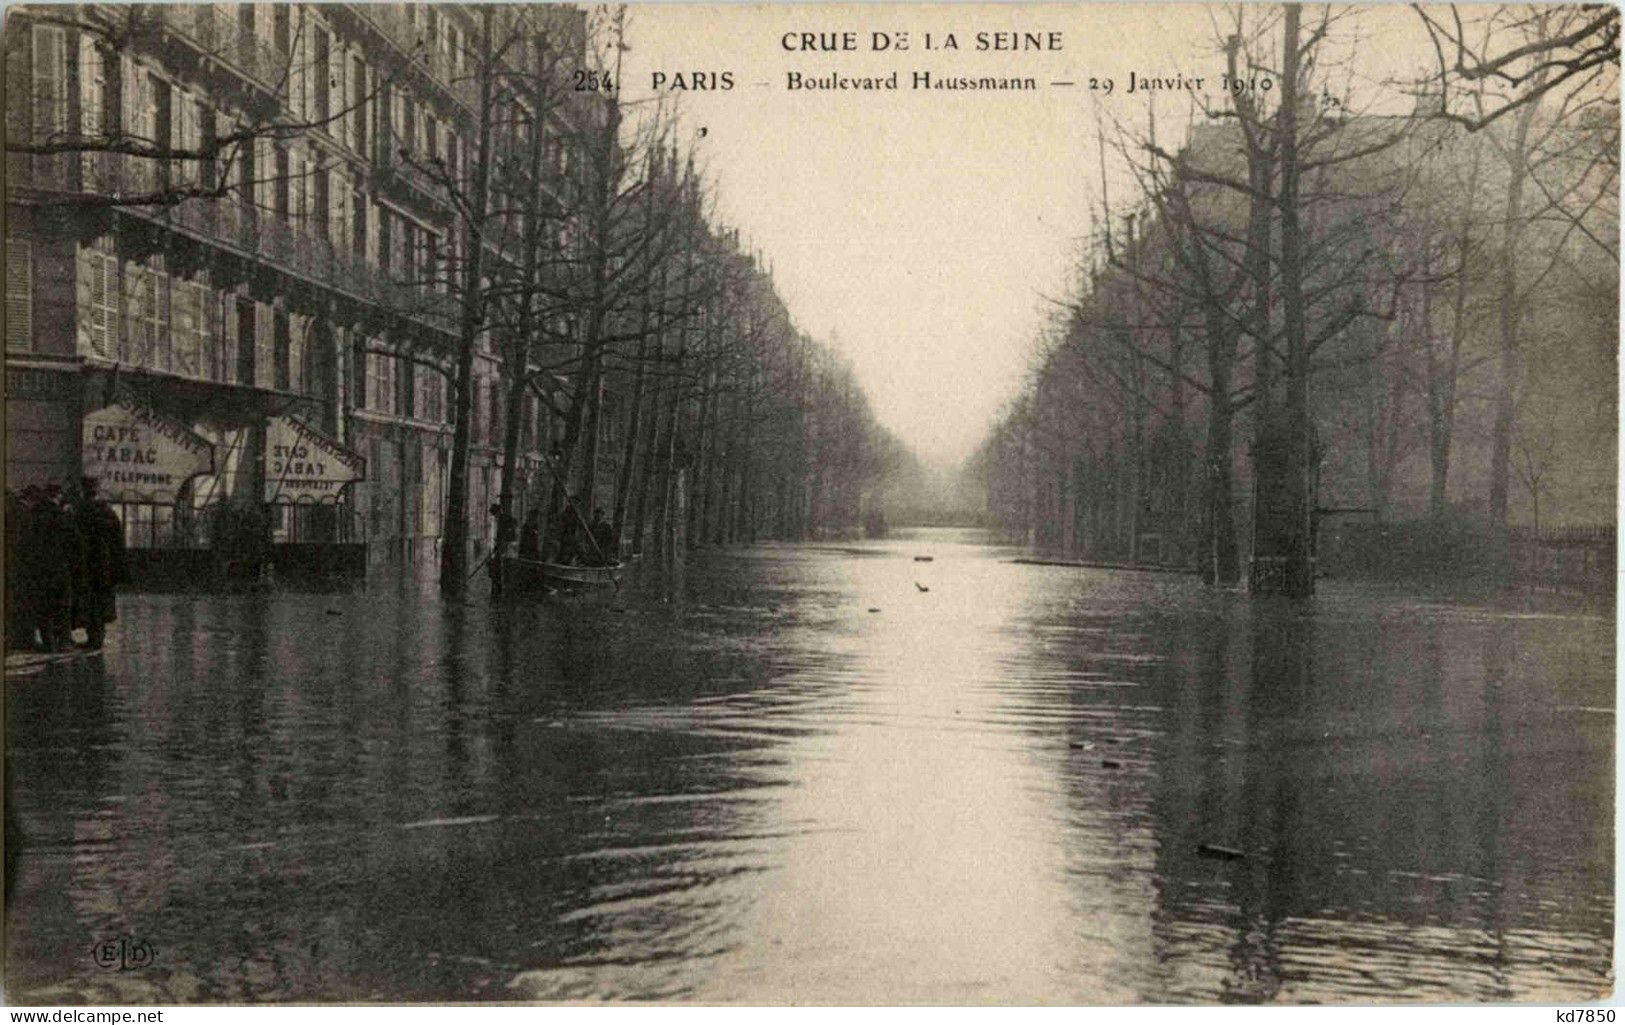 Paris - Inondations 1910 - Überschwemmung 1910